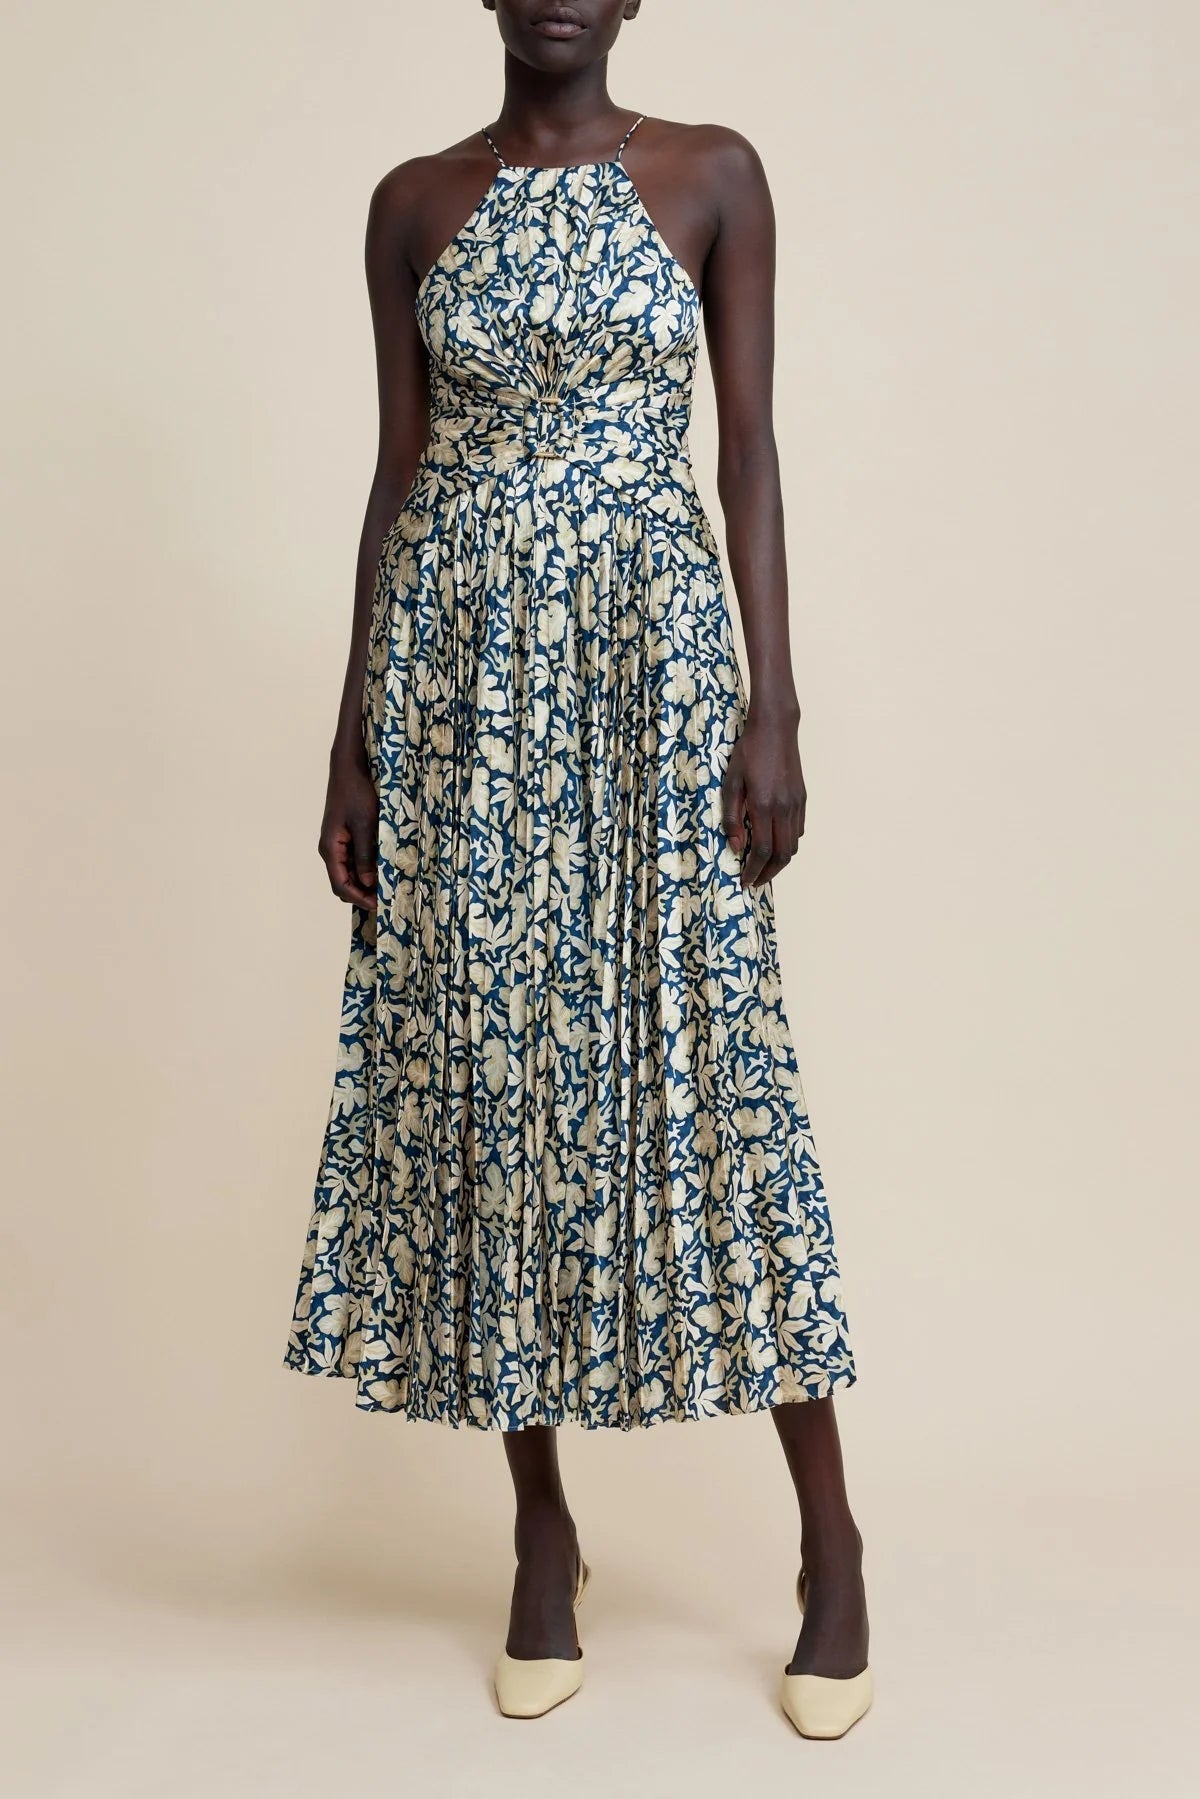 Acler Montague Midi Dress in Sea Forest Print - Estilo Boutique